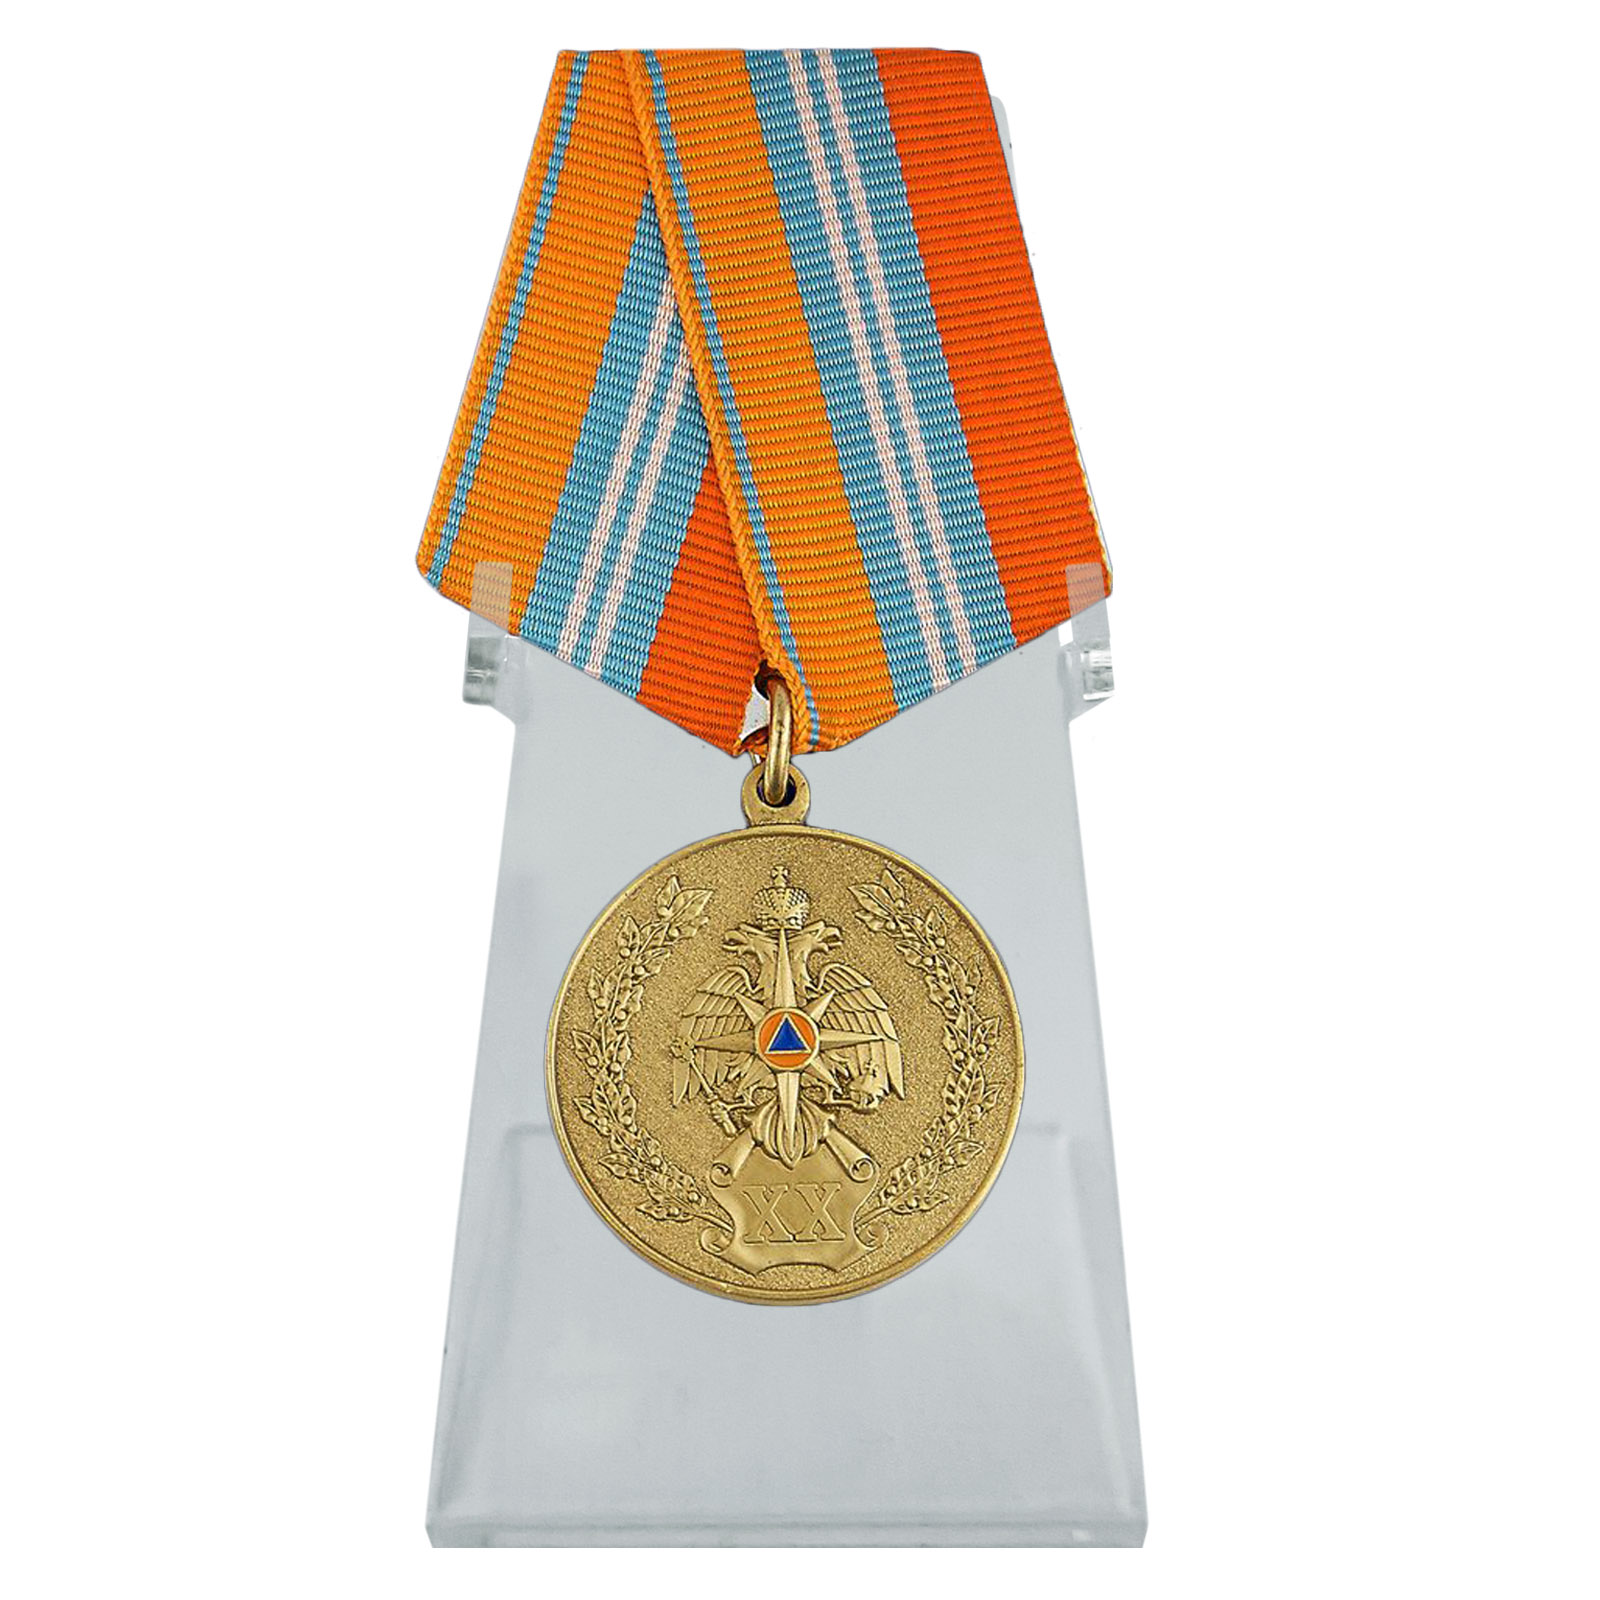 Купить медаль ГКЧС-МЧС на подставке выгодно с доставкой